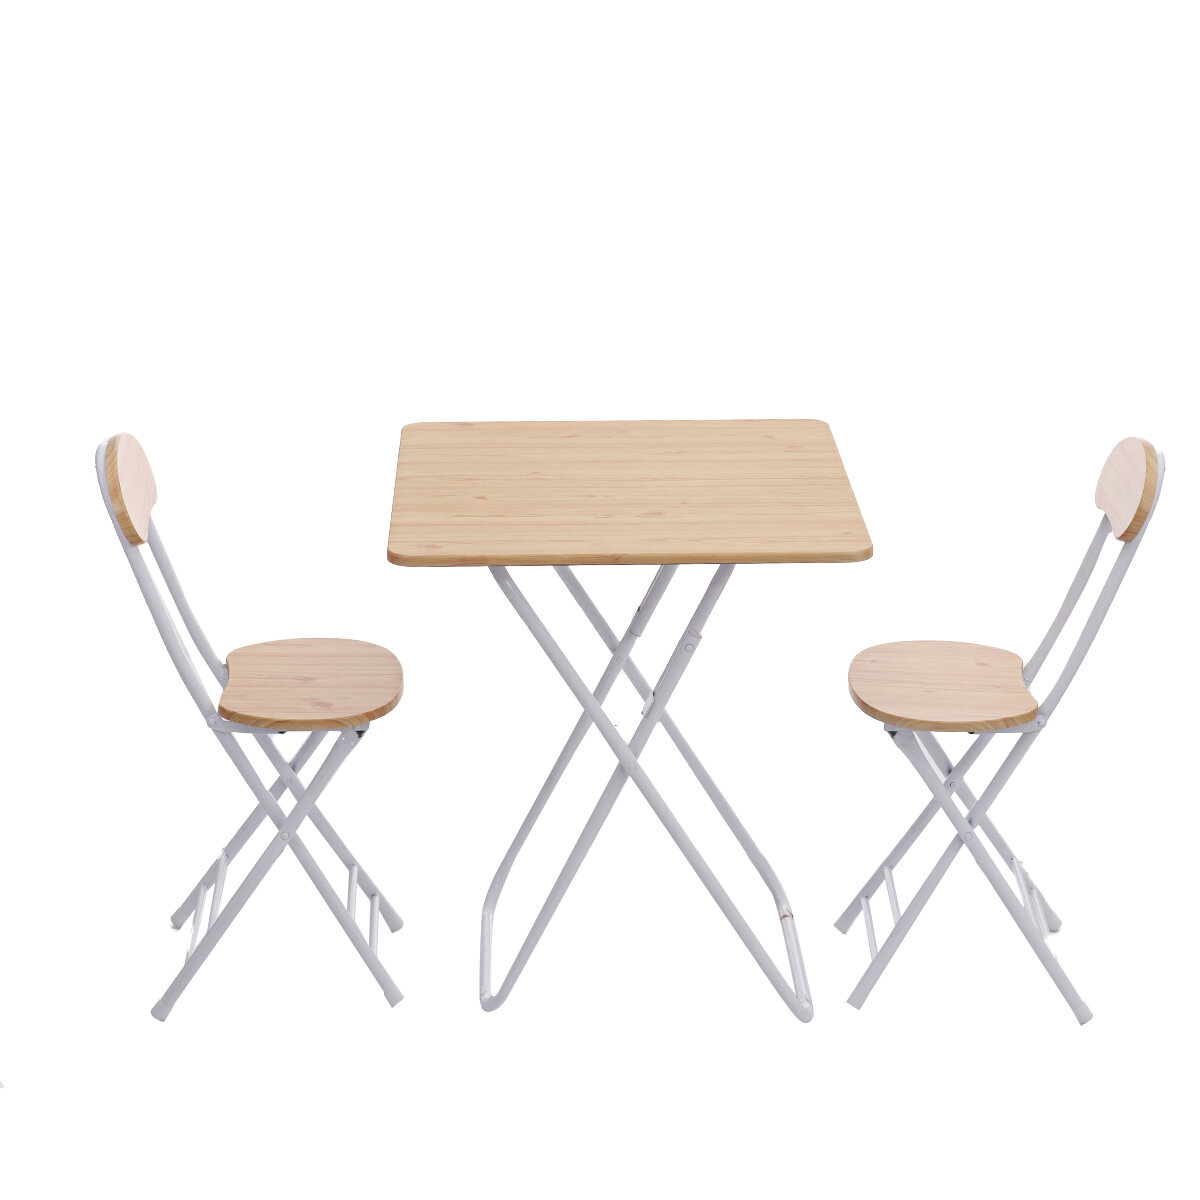 Conjunto de mesa e cadeiras dobráveis quadradas, portátil para comer ao ar livre, acampar ou fazer um piquenique.